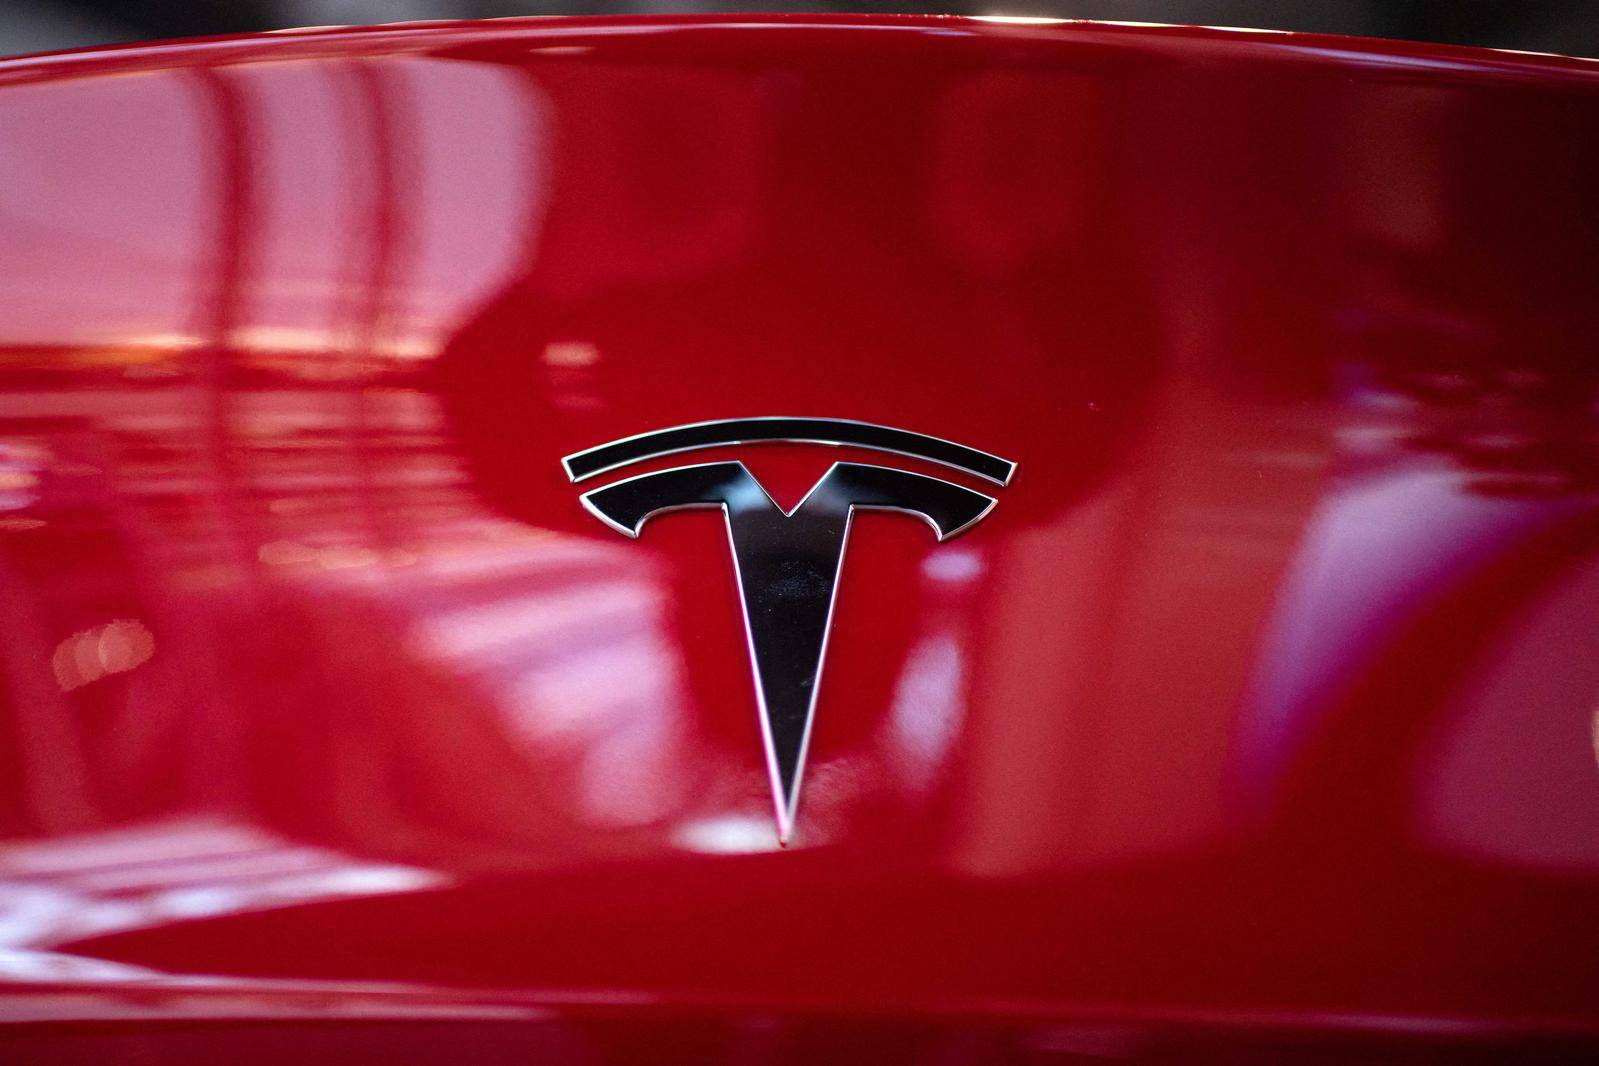 Tesla casse brutalement les prix des ses voitures électriques : en 24 h, le  Model 3 baisse de 13 500 euros en France 